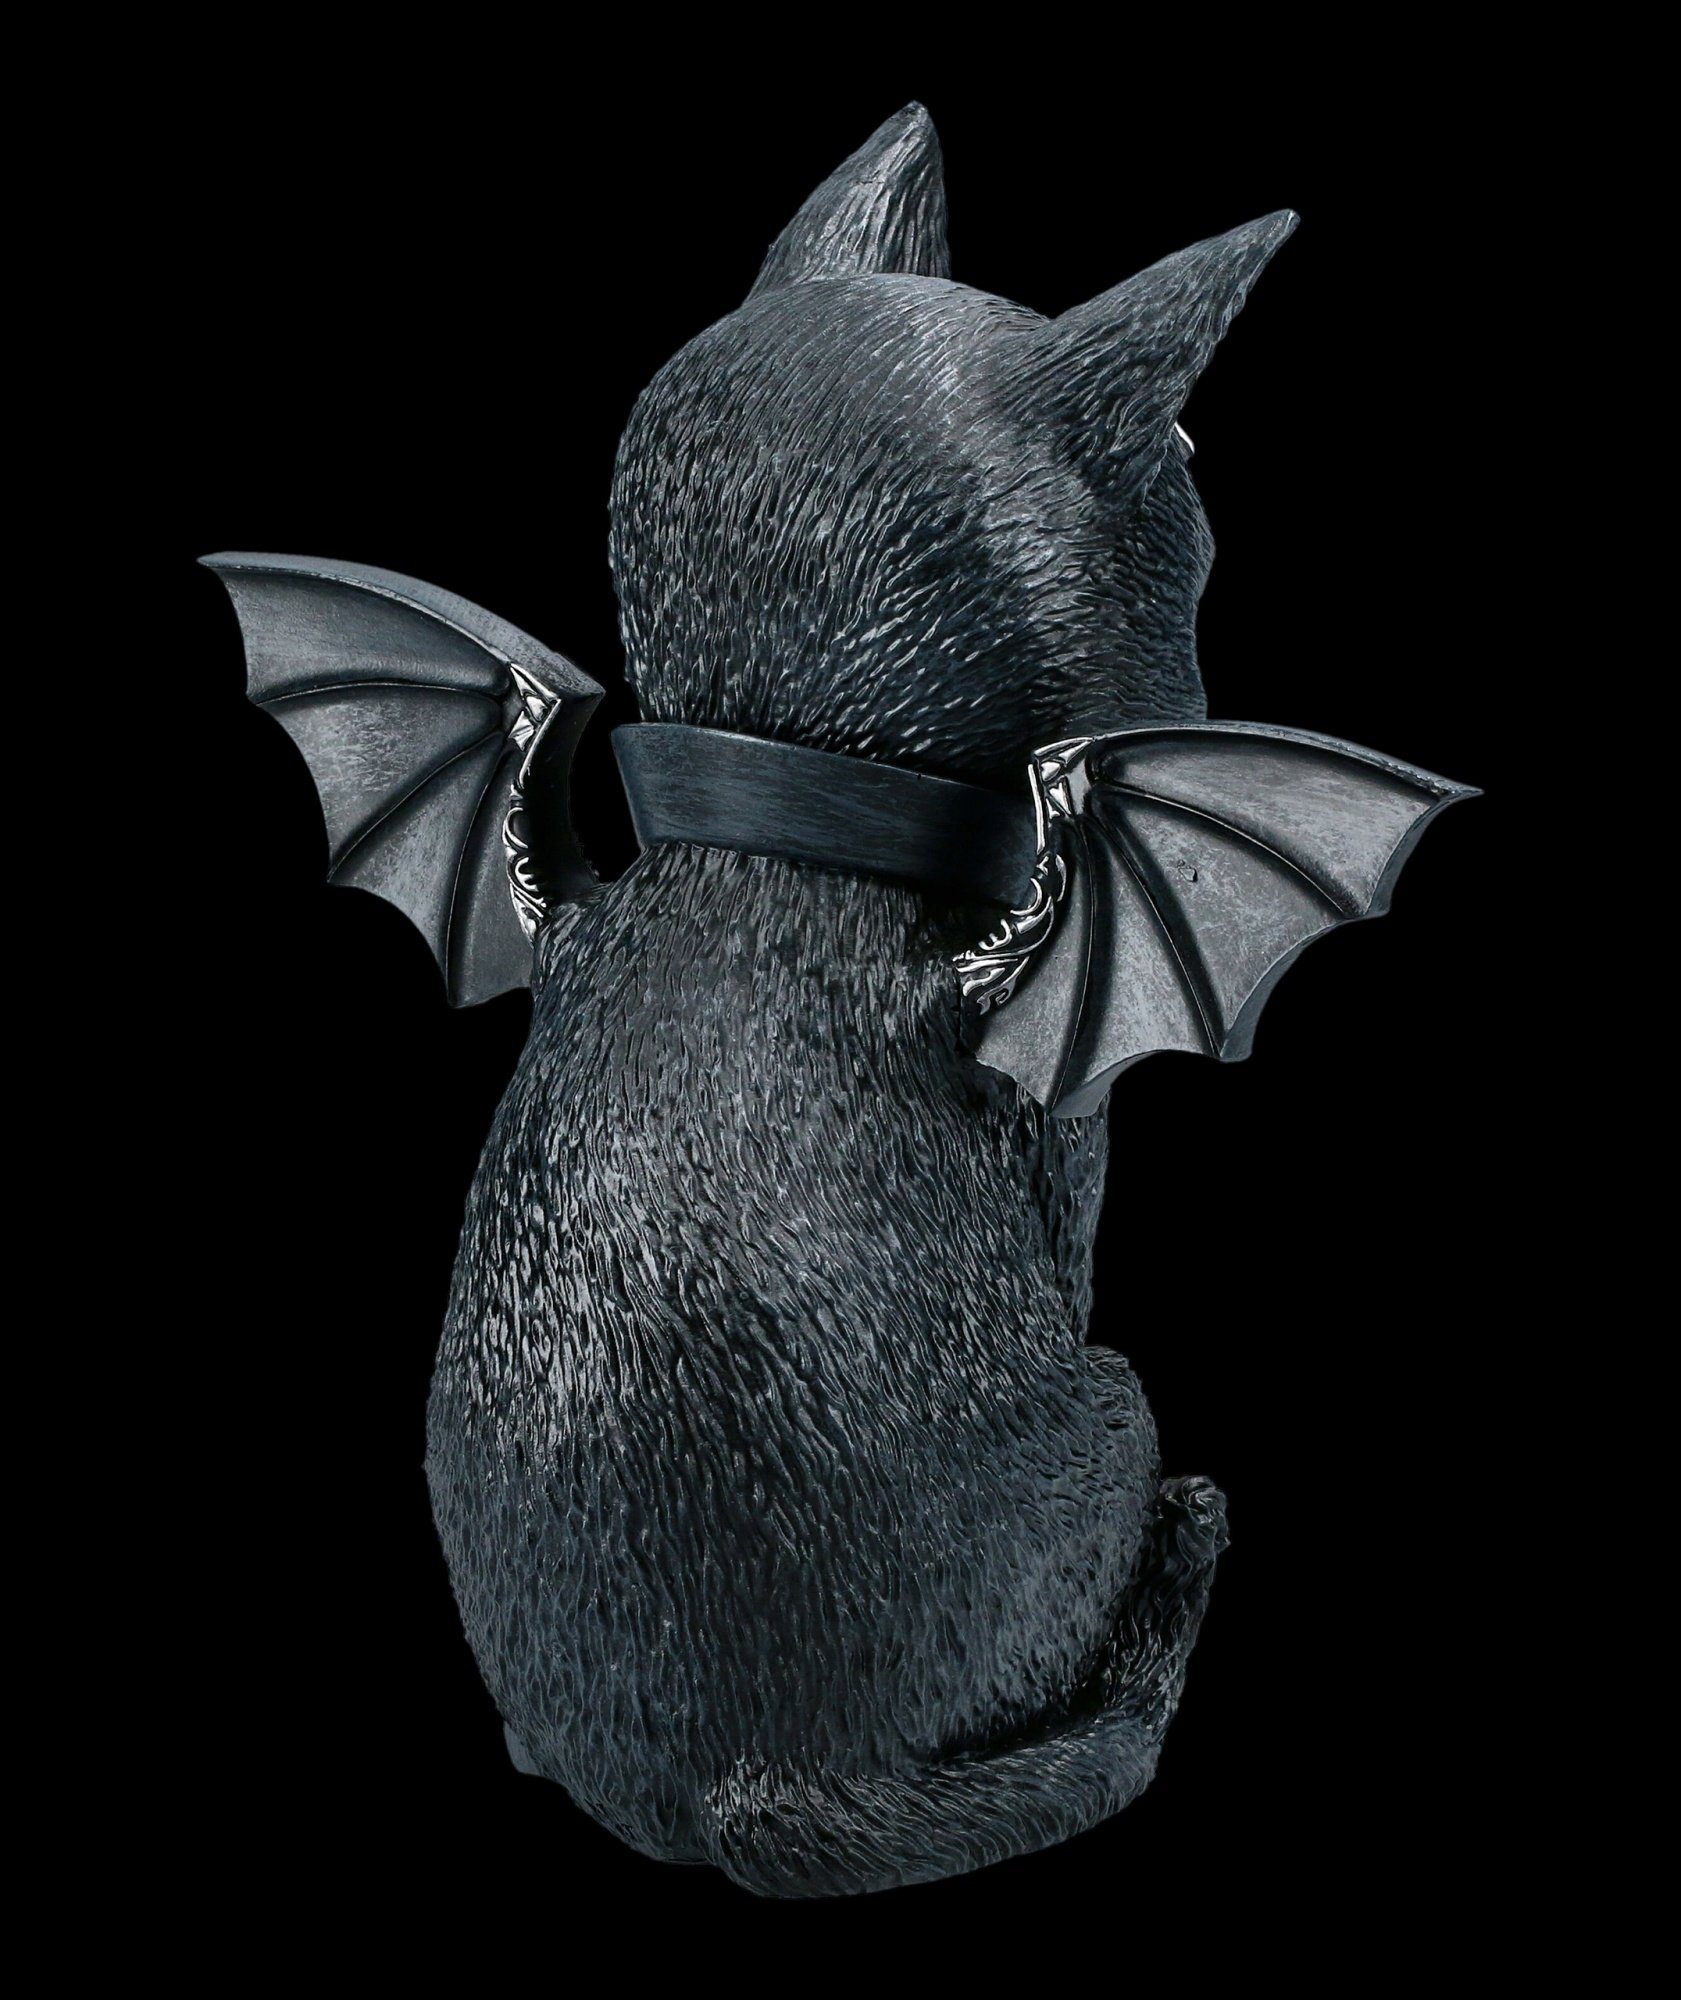 Tierfigur Now Deko Okkulte - - Figuren Fantasy Katzenfigur Flügeln mit Gothic Nemesis Malpuss GmbH Shop groß